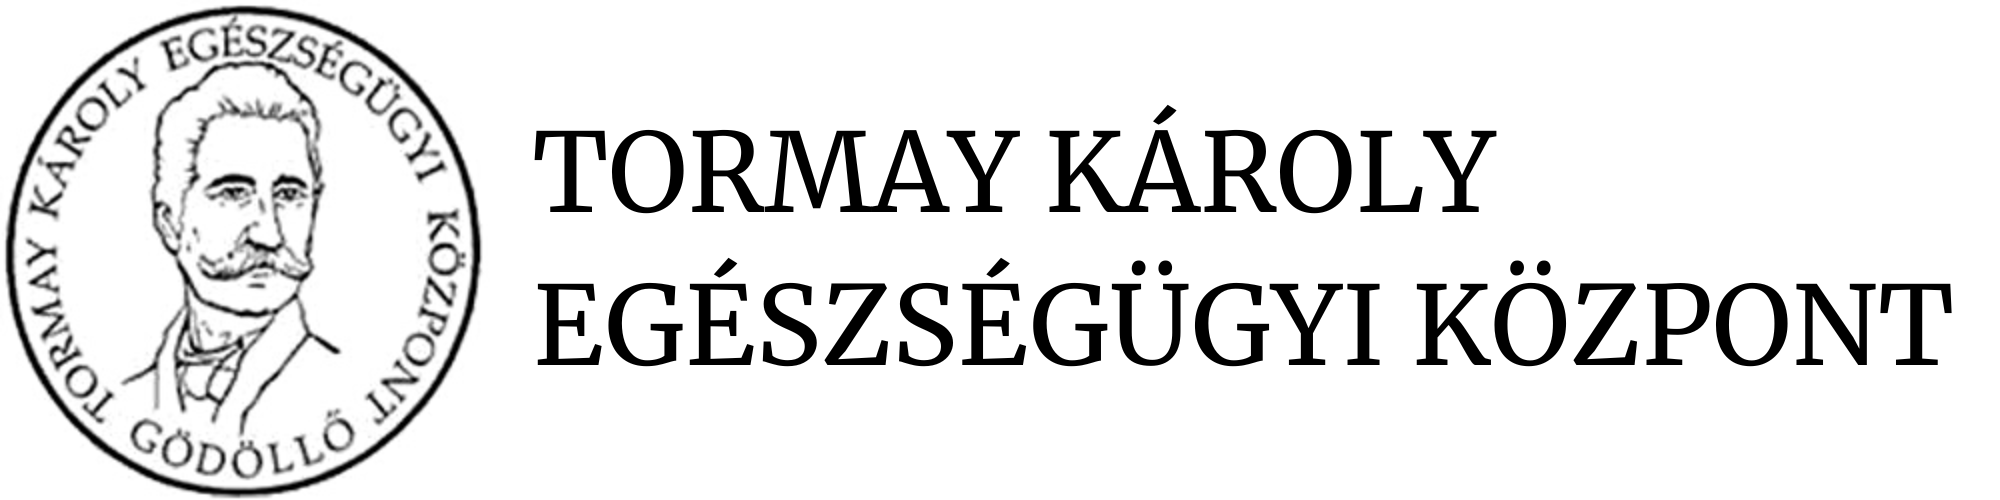 tormay logo